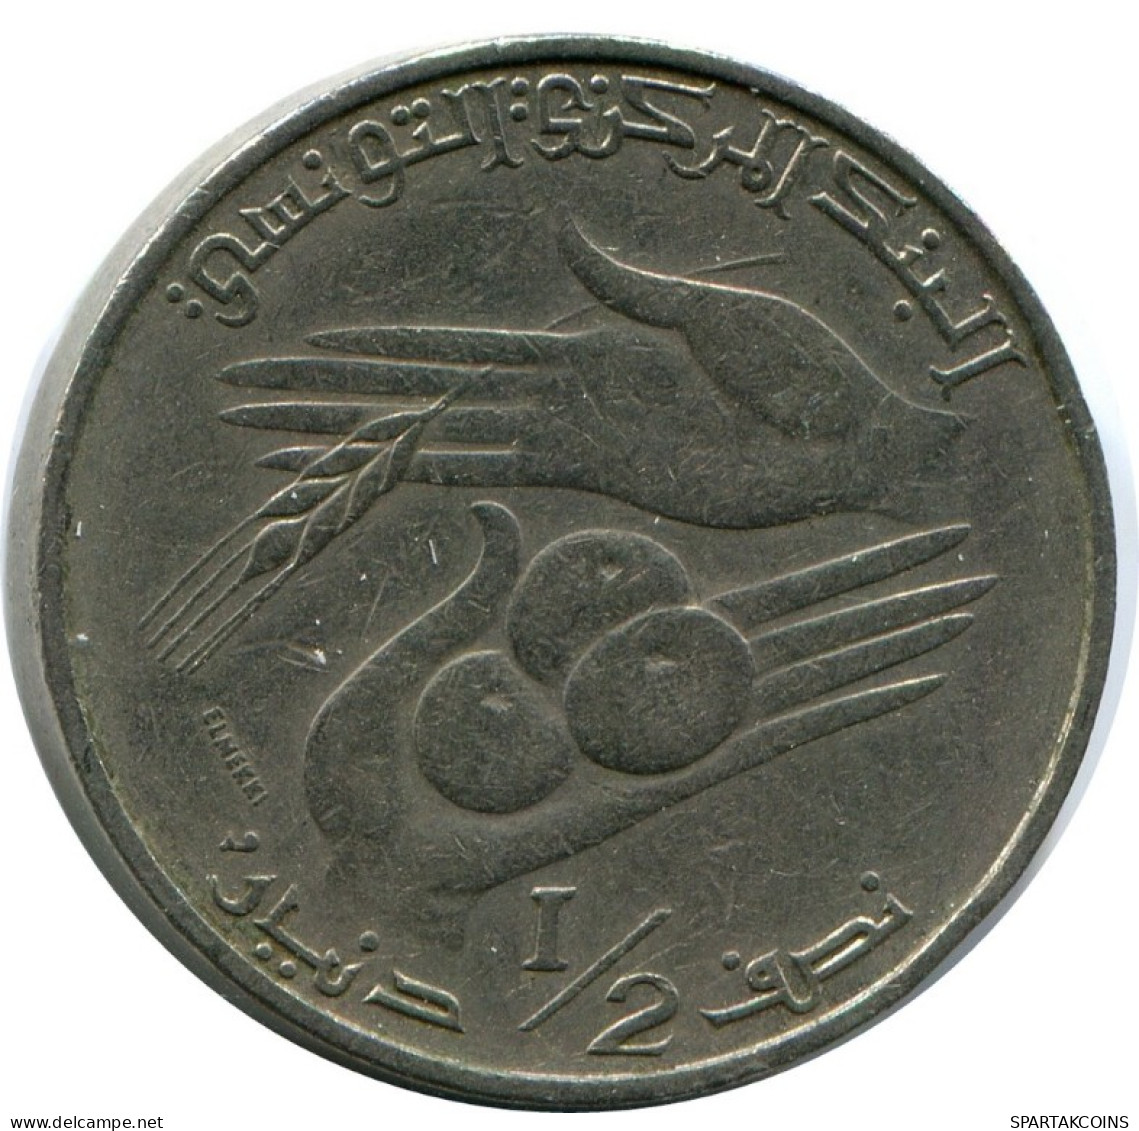 1/2 DINAR 1976 TUNISIA Coin FAO #AK163.U.A - Tunisia